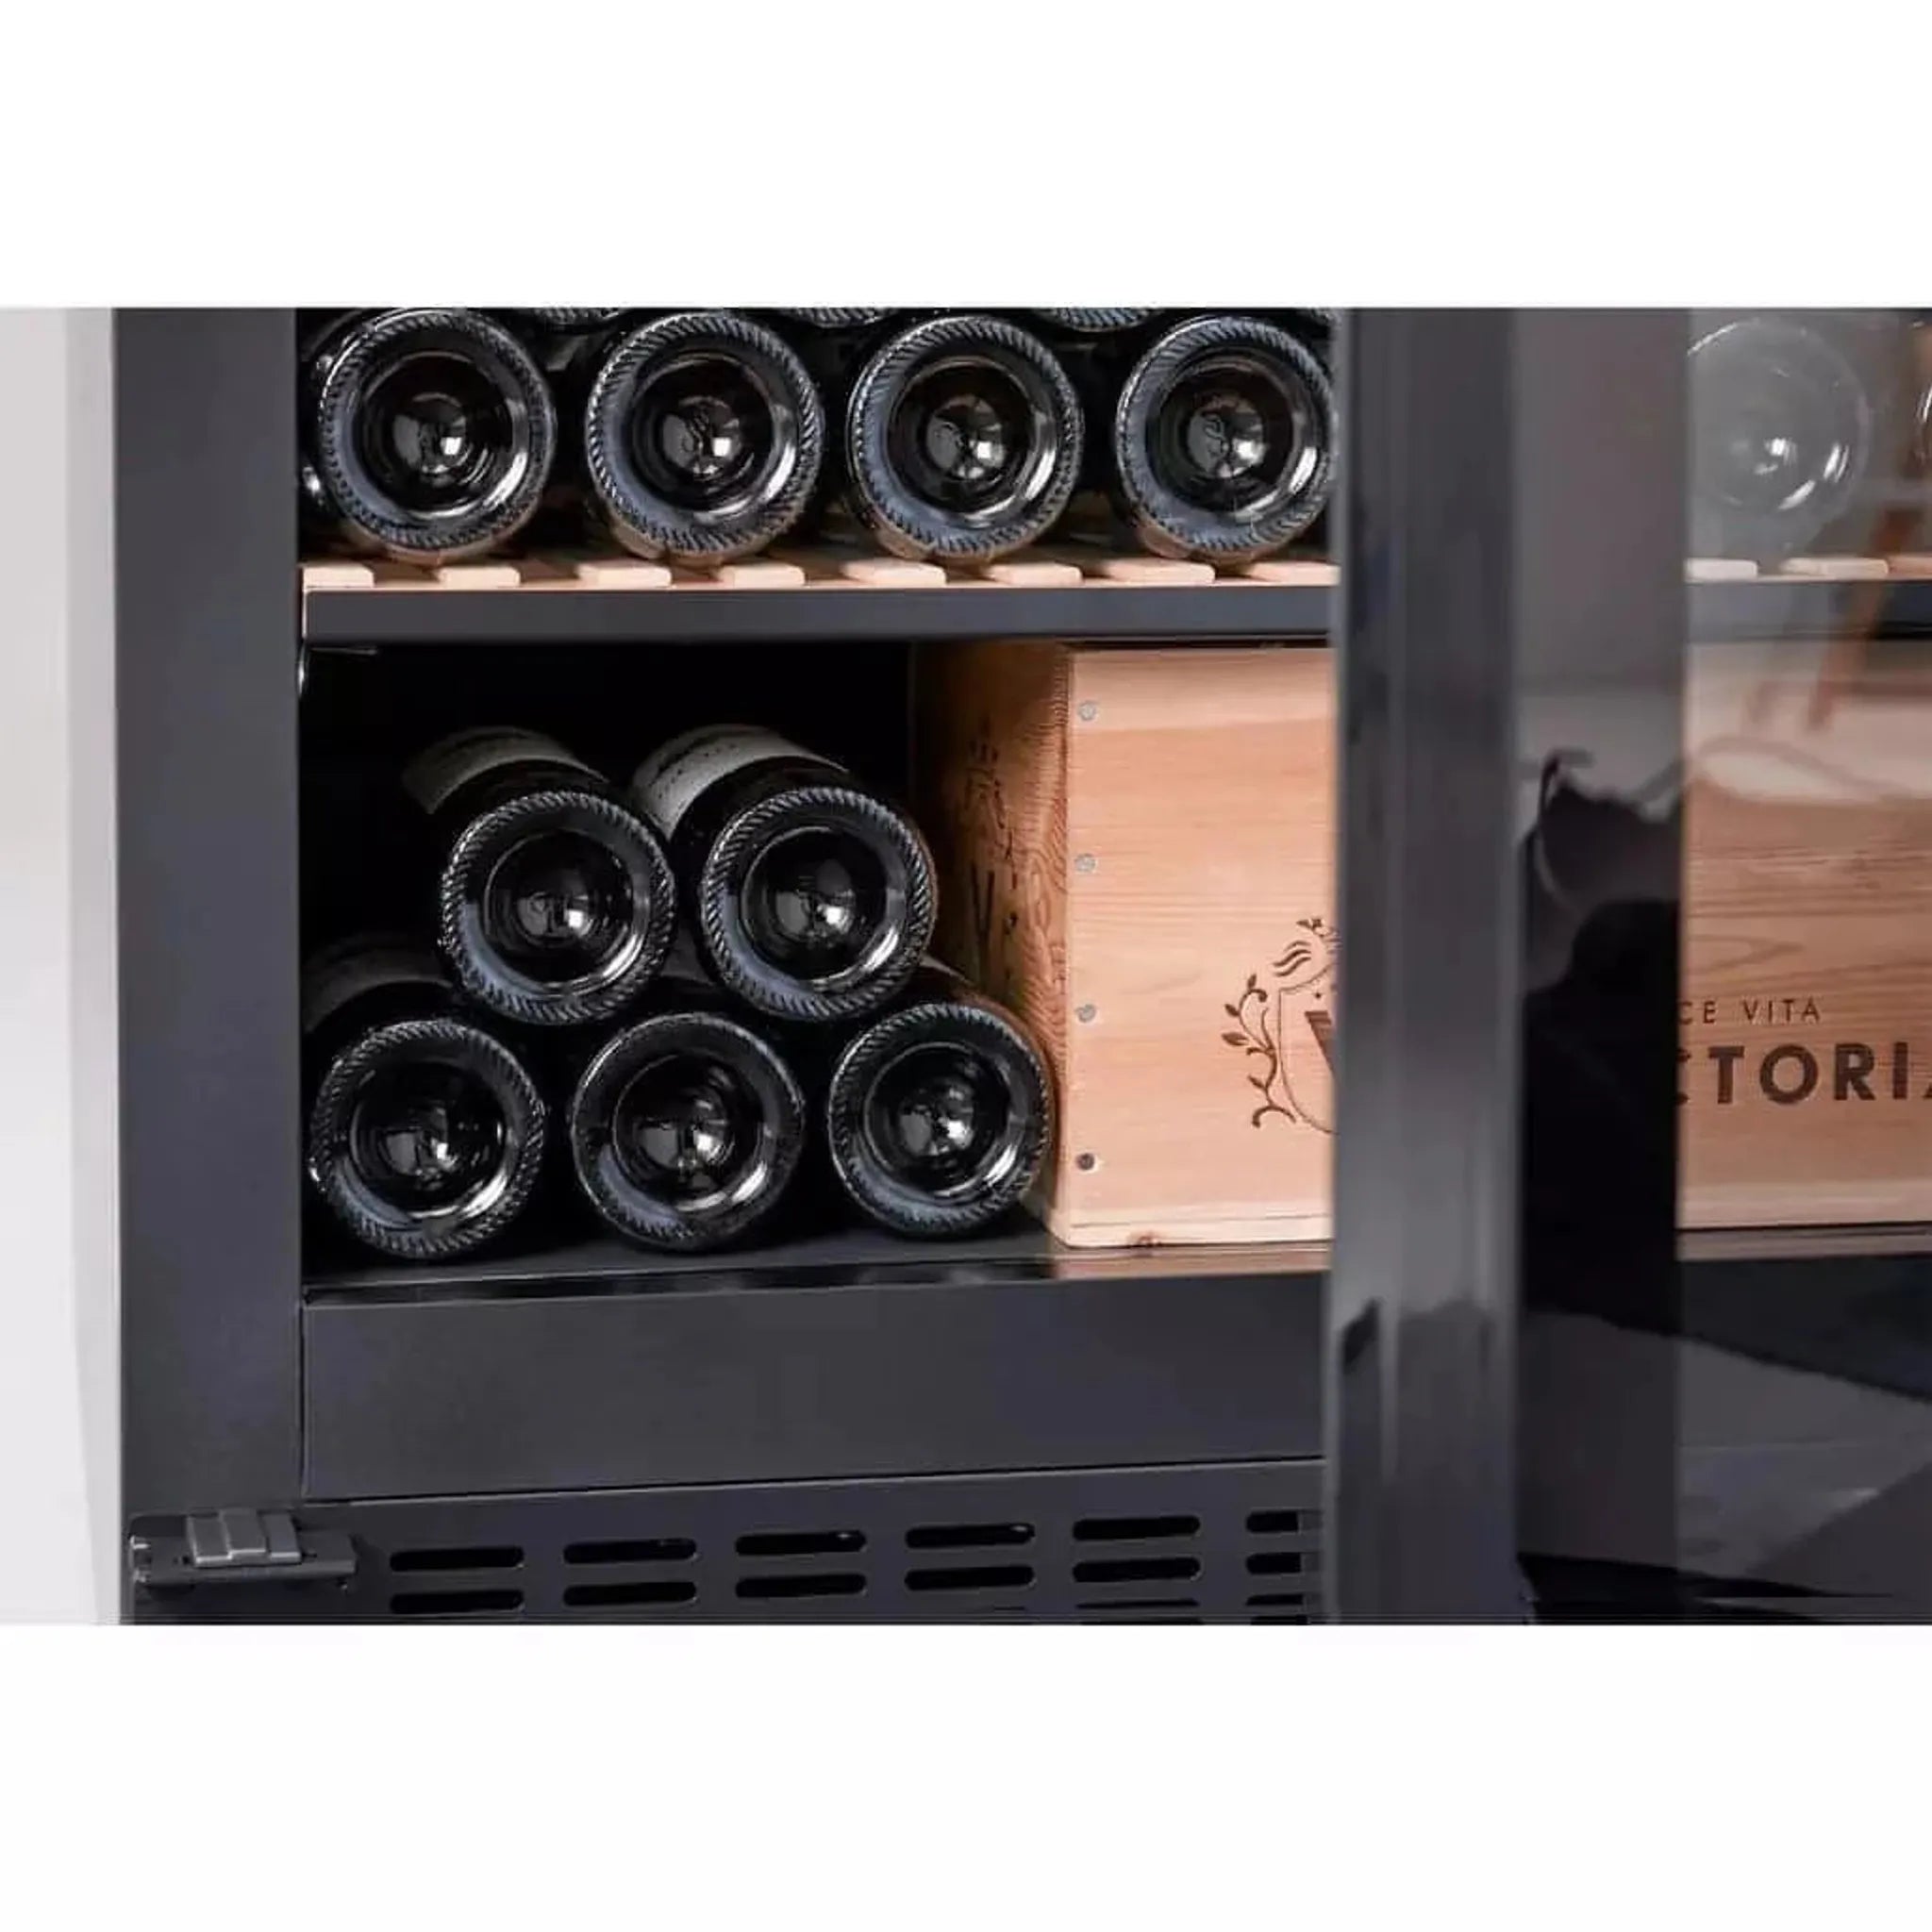 mQuvée - 600mm - Built in/Freestanding - Wine Cabinet - Velvet 170 Solid